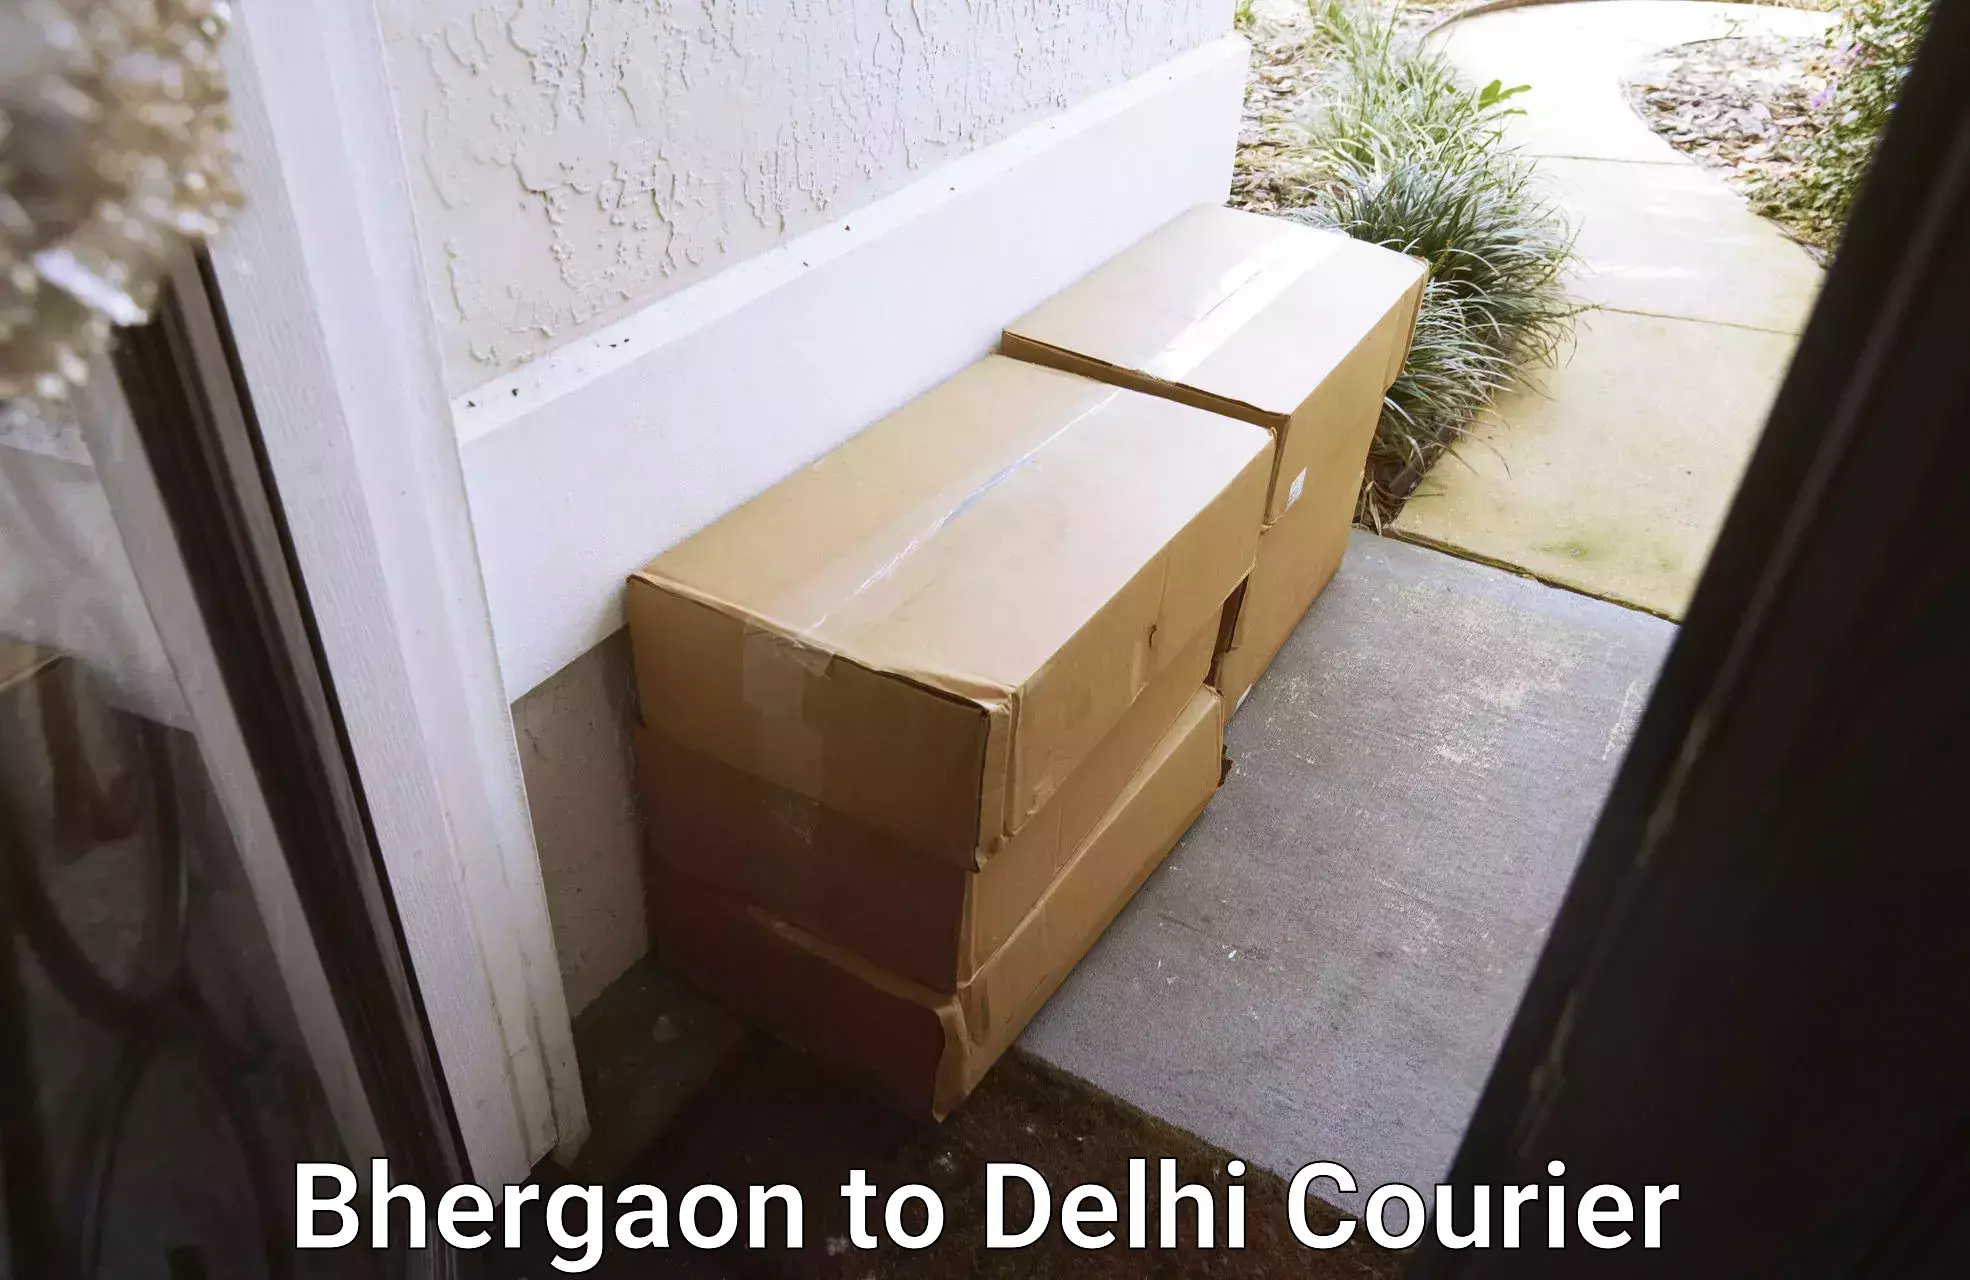 Express logistics providers Bhergaon to East Delhi